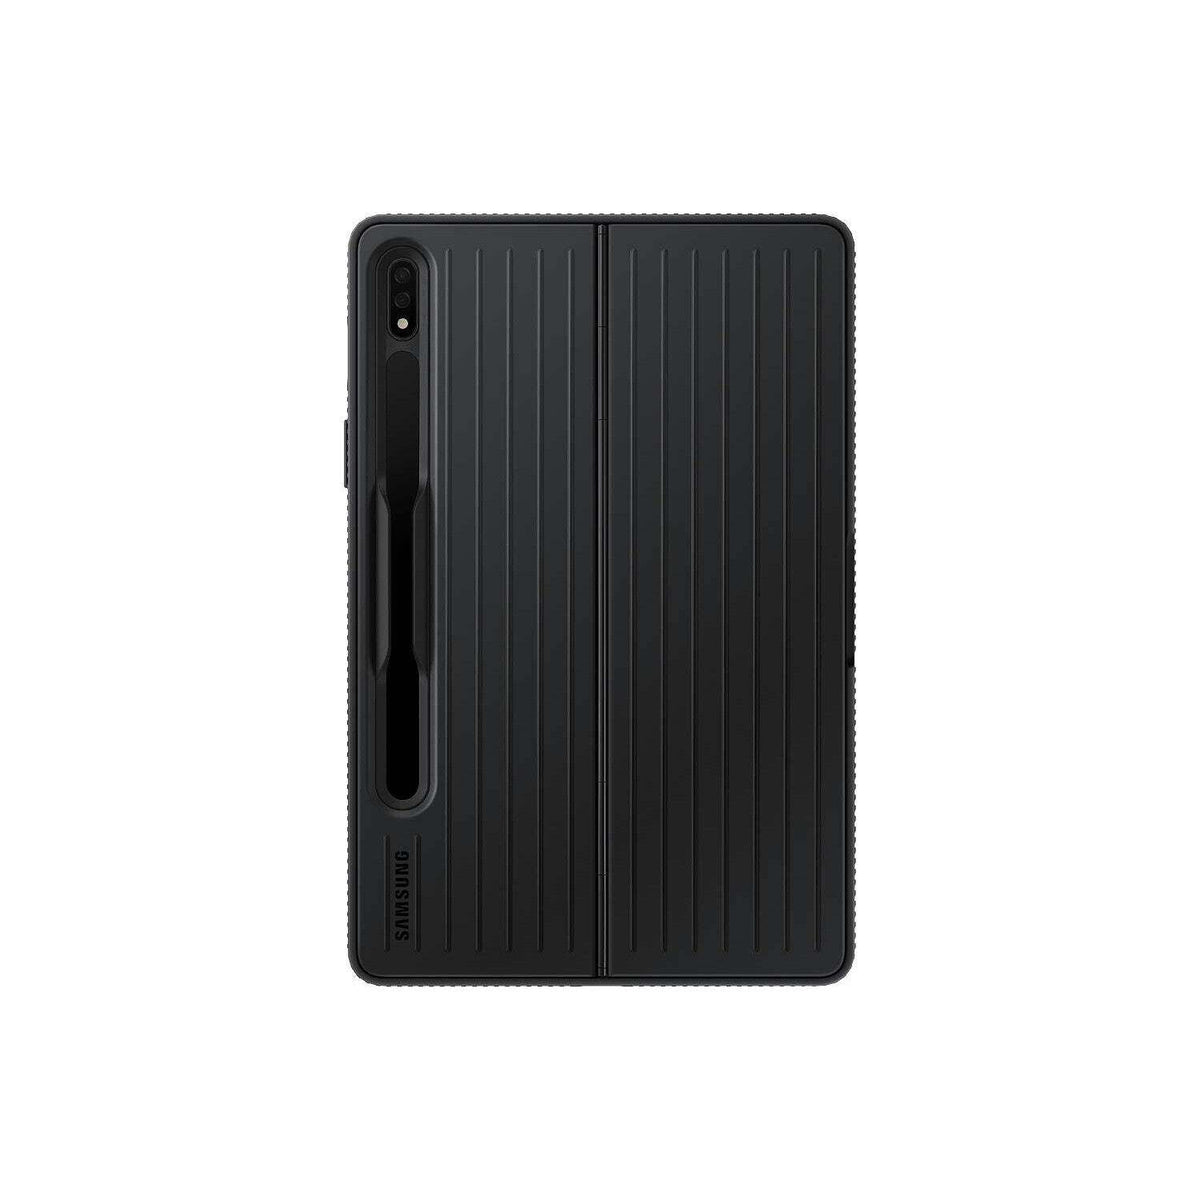 Púzdro Samsung polohovacie pre Tab S8 Black (EFRX700CBEGWW)